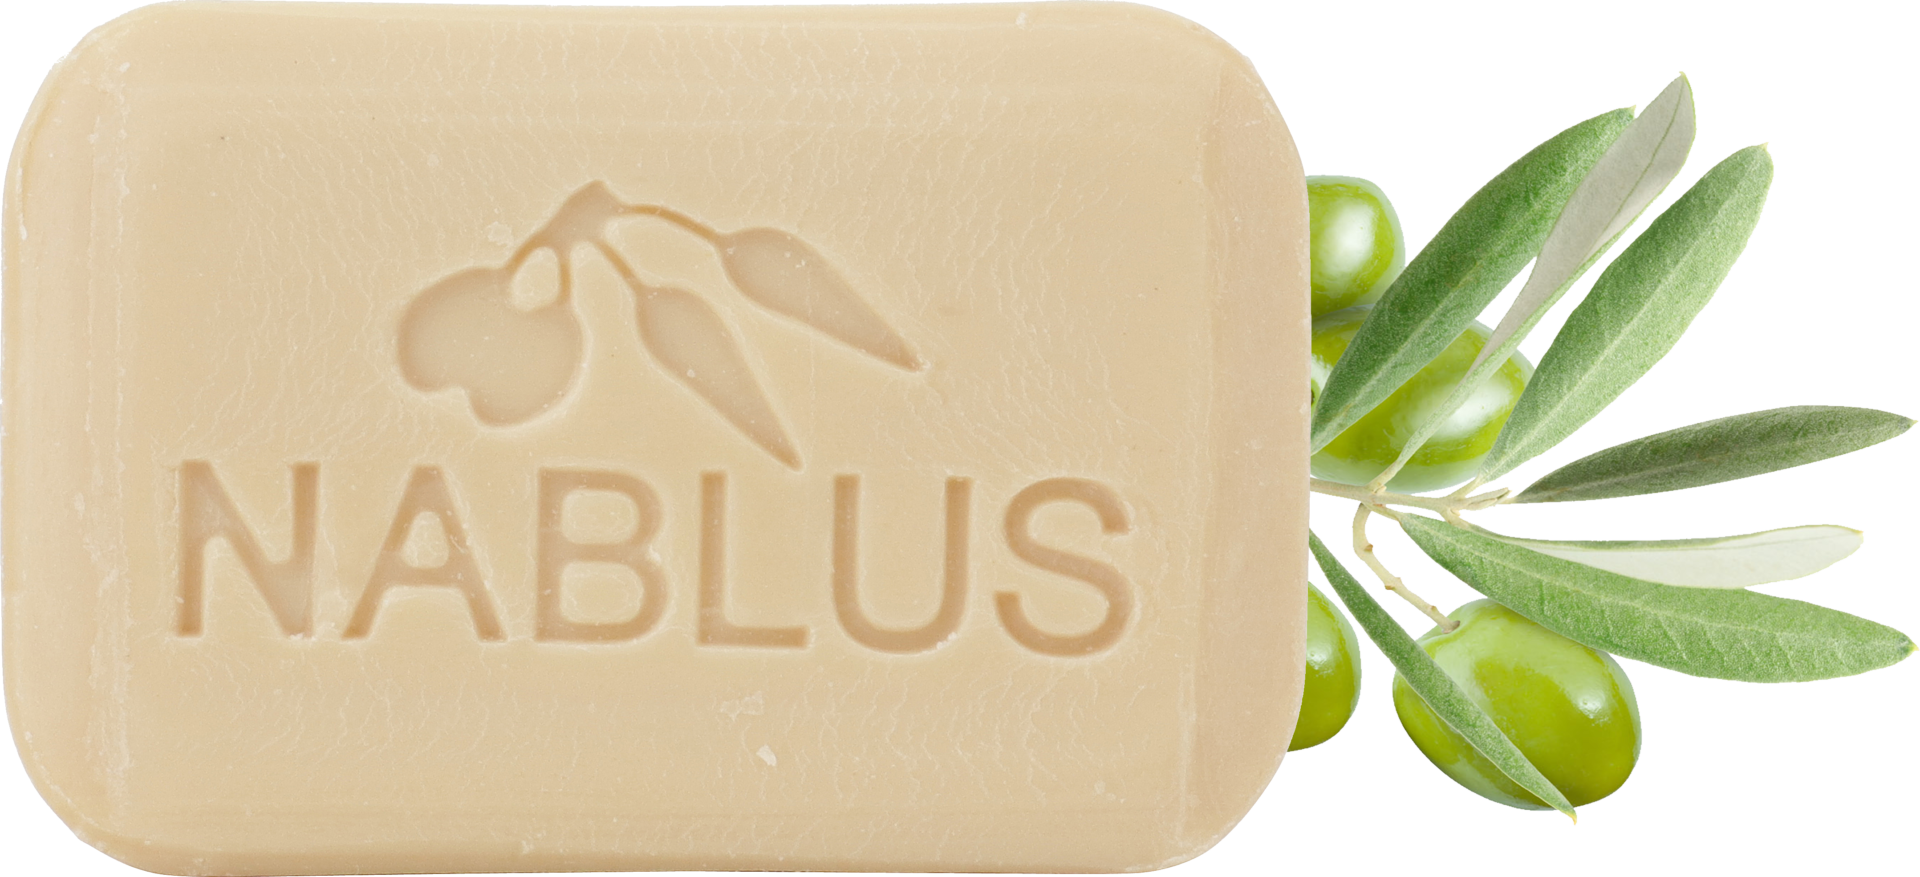 ナーブルスソープ NABLUS SOAP ナチュラルオリーブ石鹸 乾燥対策・保湿環境 オーガニック石鹸